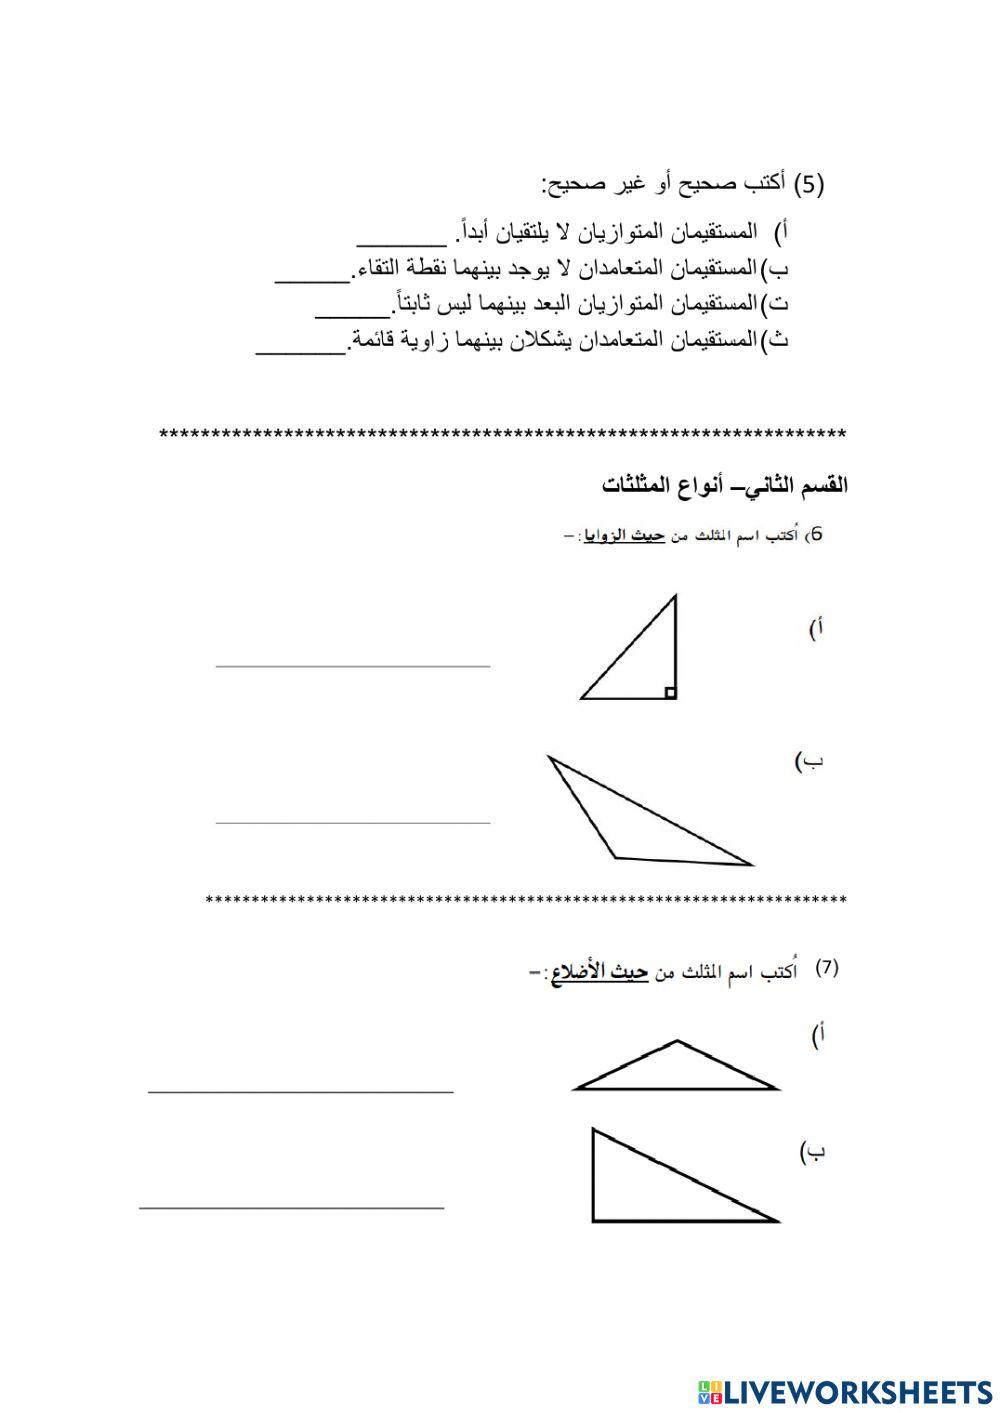 أسئلة - أنواع المثلثات - الزوايا- الخطوط المتوازية والمتعامدة